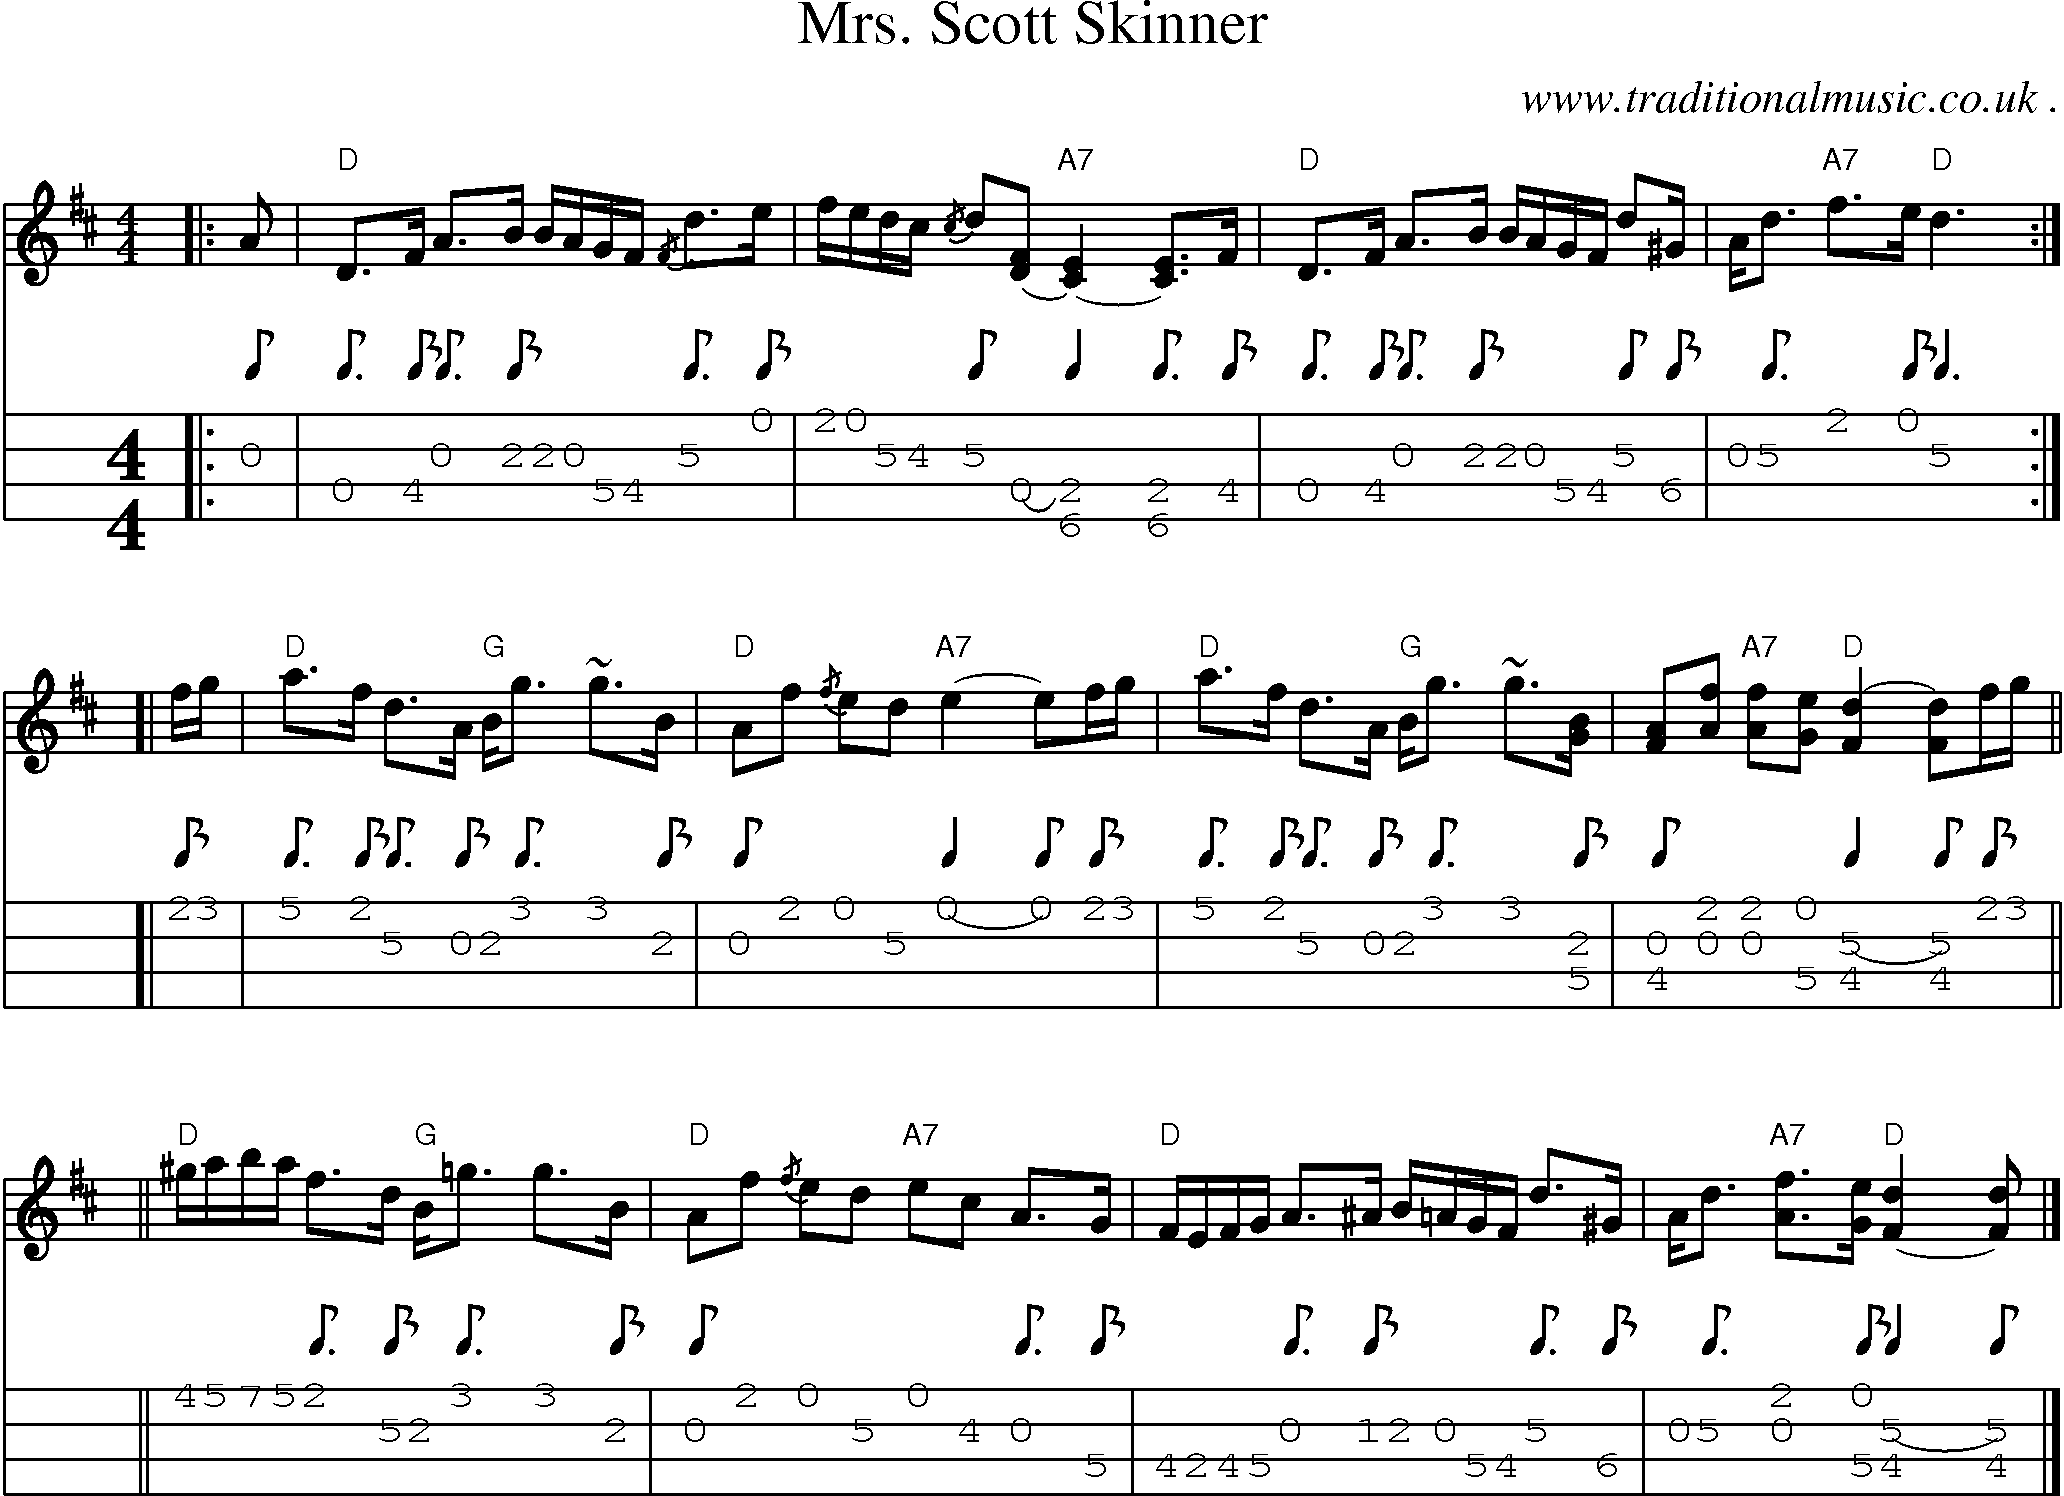 Sheet-music  score, Chords and Mandolin Tabs for Mrs Scott Skinner